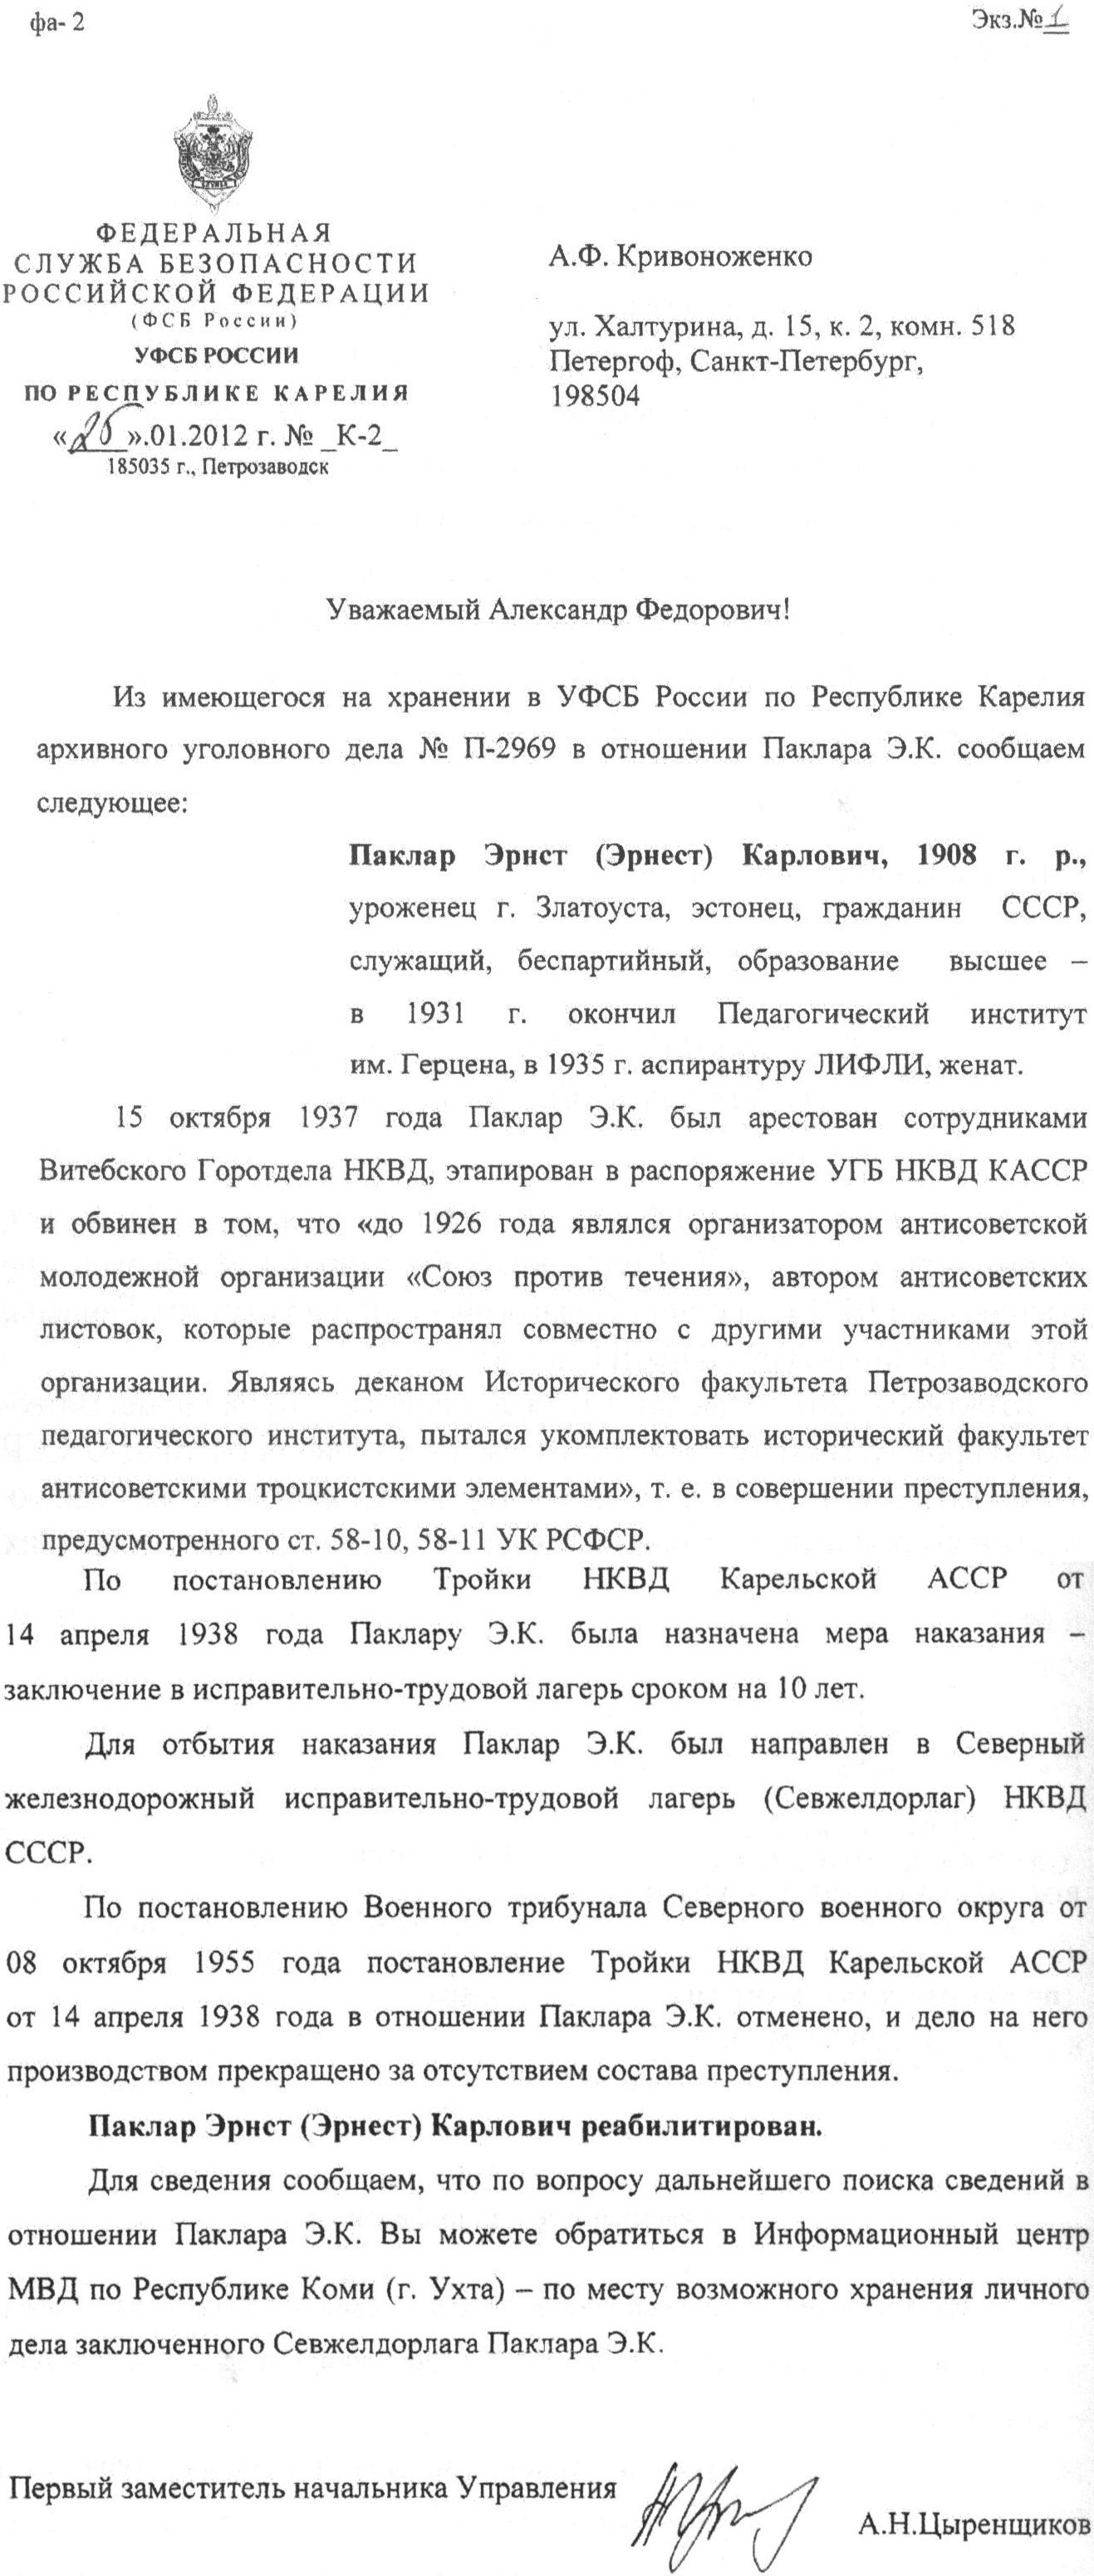 Письмо УФСБ по Республике Карелия по запросу А.Ф. Кривоноженко